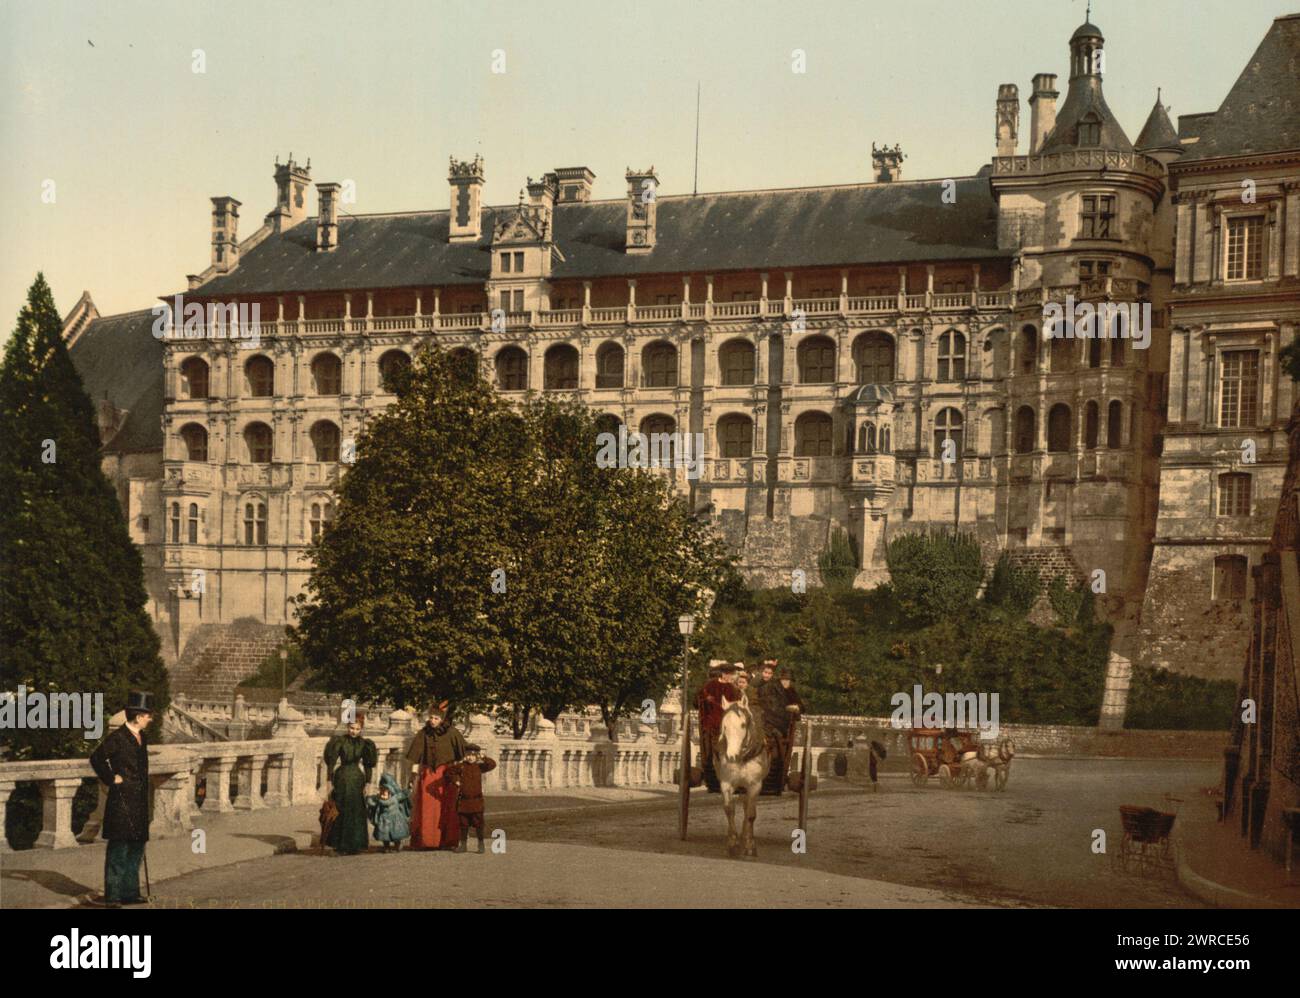 Das Schloss, der Flügel von Franz I., die Fassade, Blois, Frankreich, zwischen ca. 1890 und ca. 1900., Farbe, 1890-1900 Stockfoto